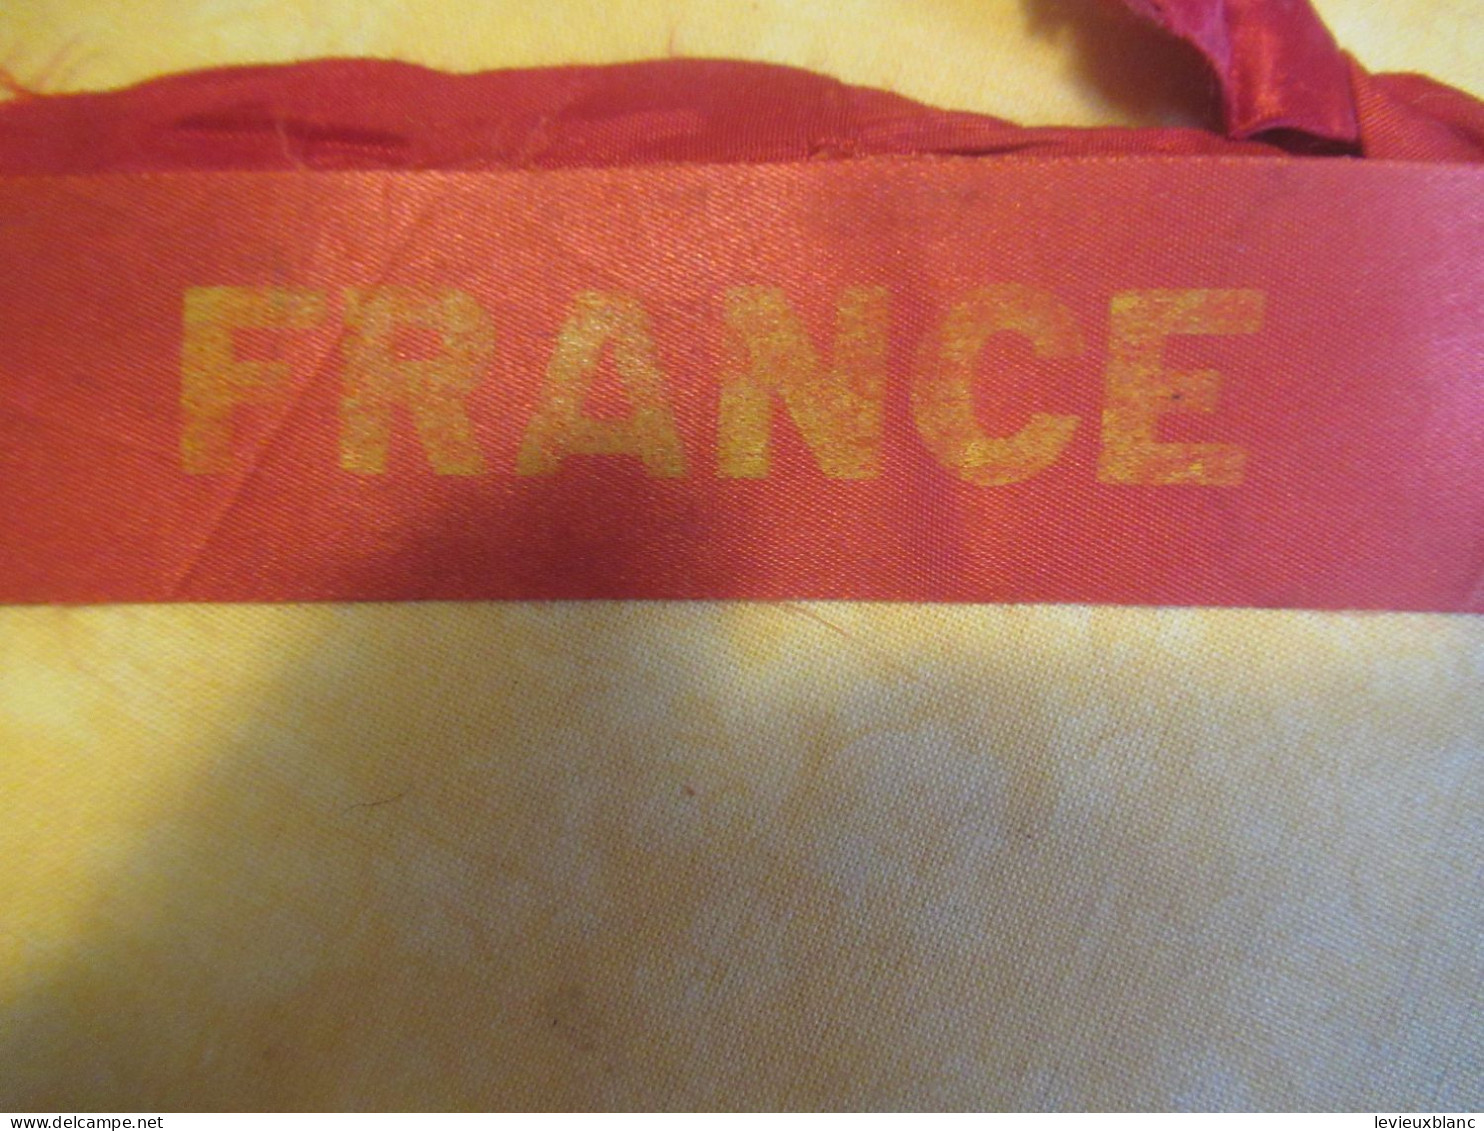 2 Rubans anciens usagés de Bachi/  paquebot "FRANCE"/ Cie Gle Transatlantique/French Lines/ Vers 1970         MAR119